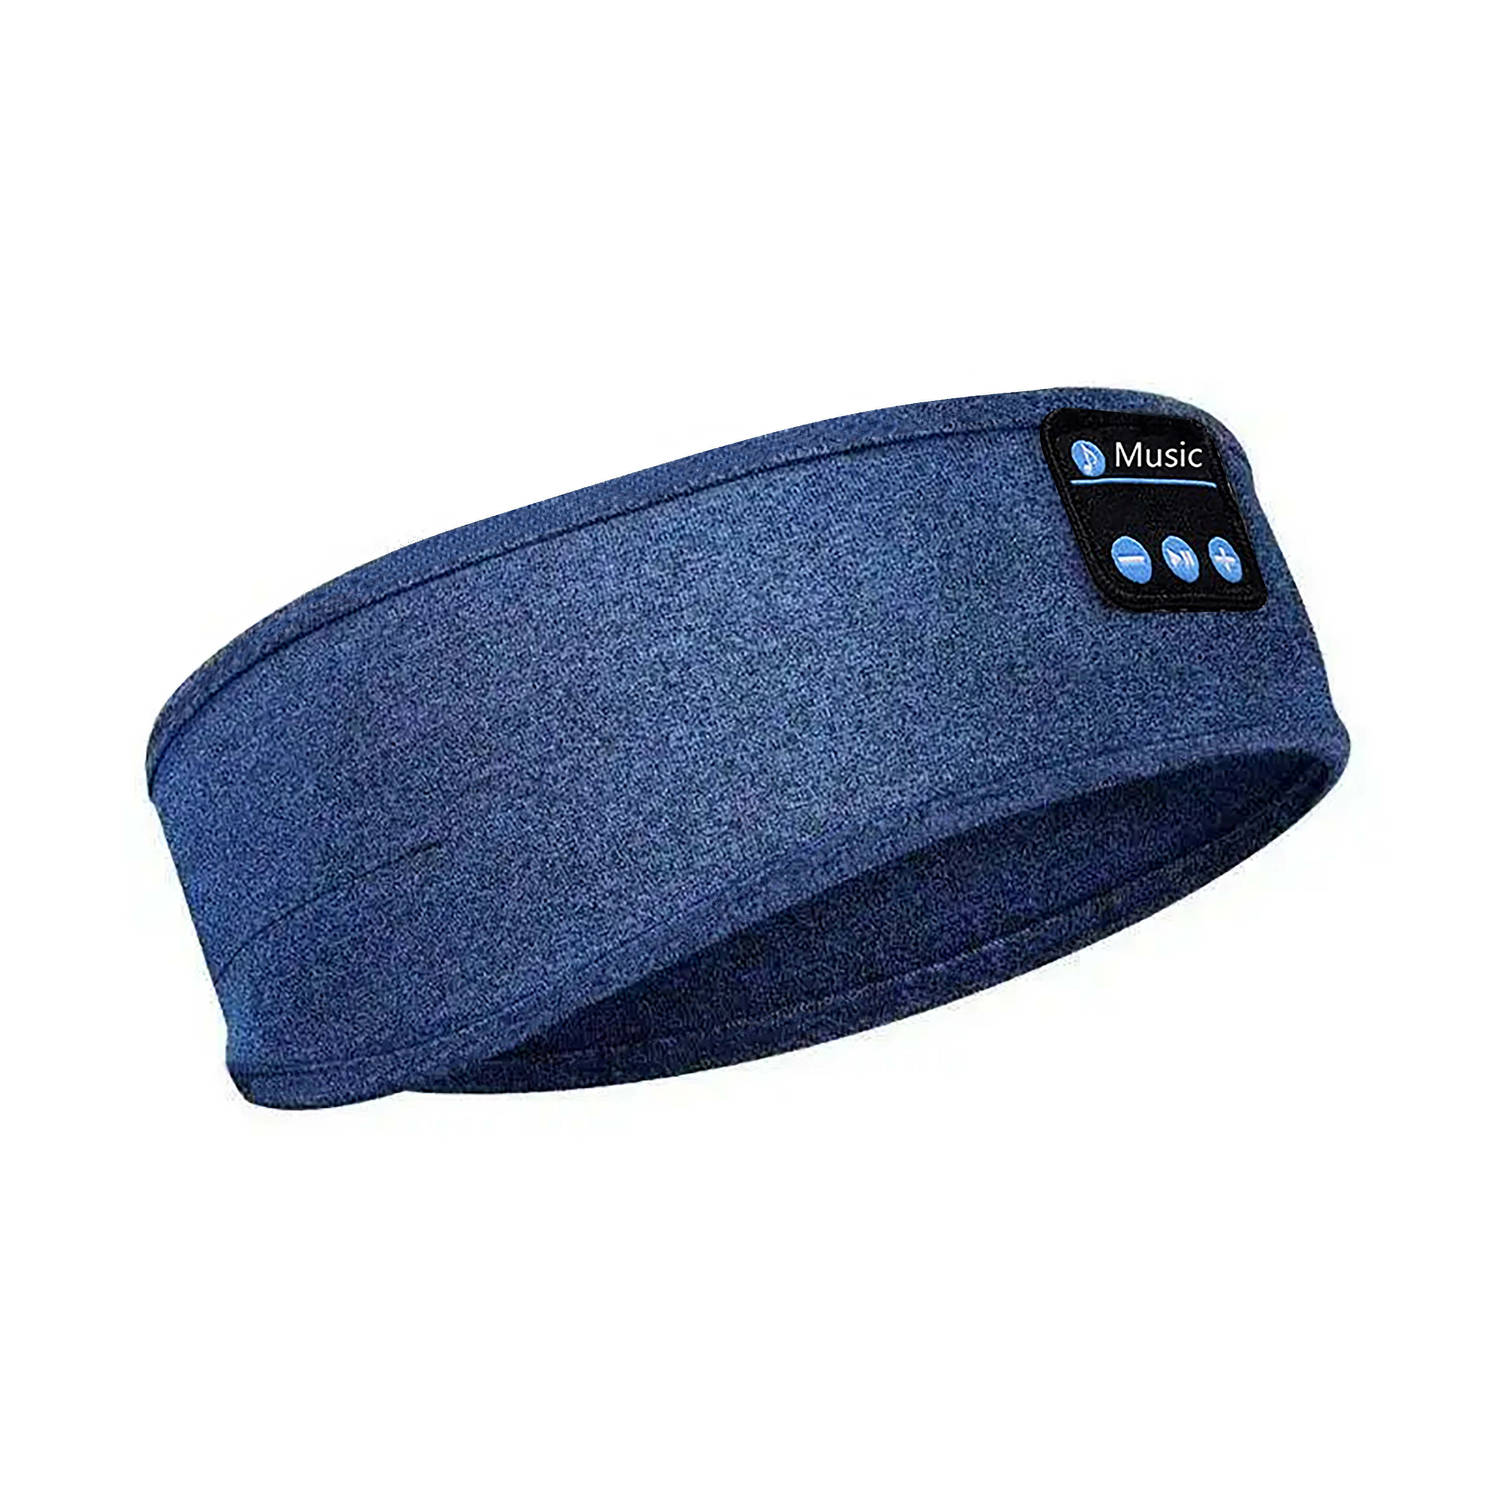 Stole My Day - Slaapmasker Bluetooth - Hoofdband - Slaap Koptelefoon Draadloos - Zweetband Hoofd - Oplaadbaar via Usb C - Blauw